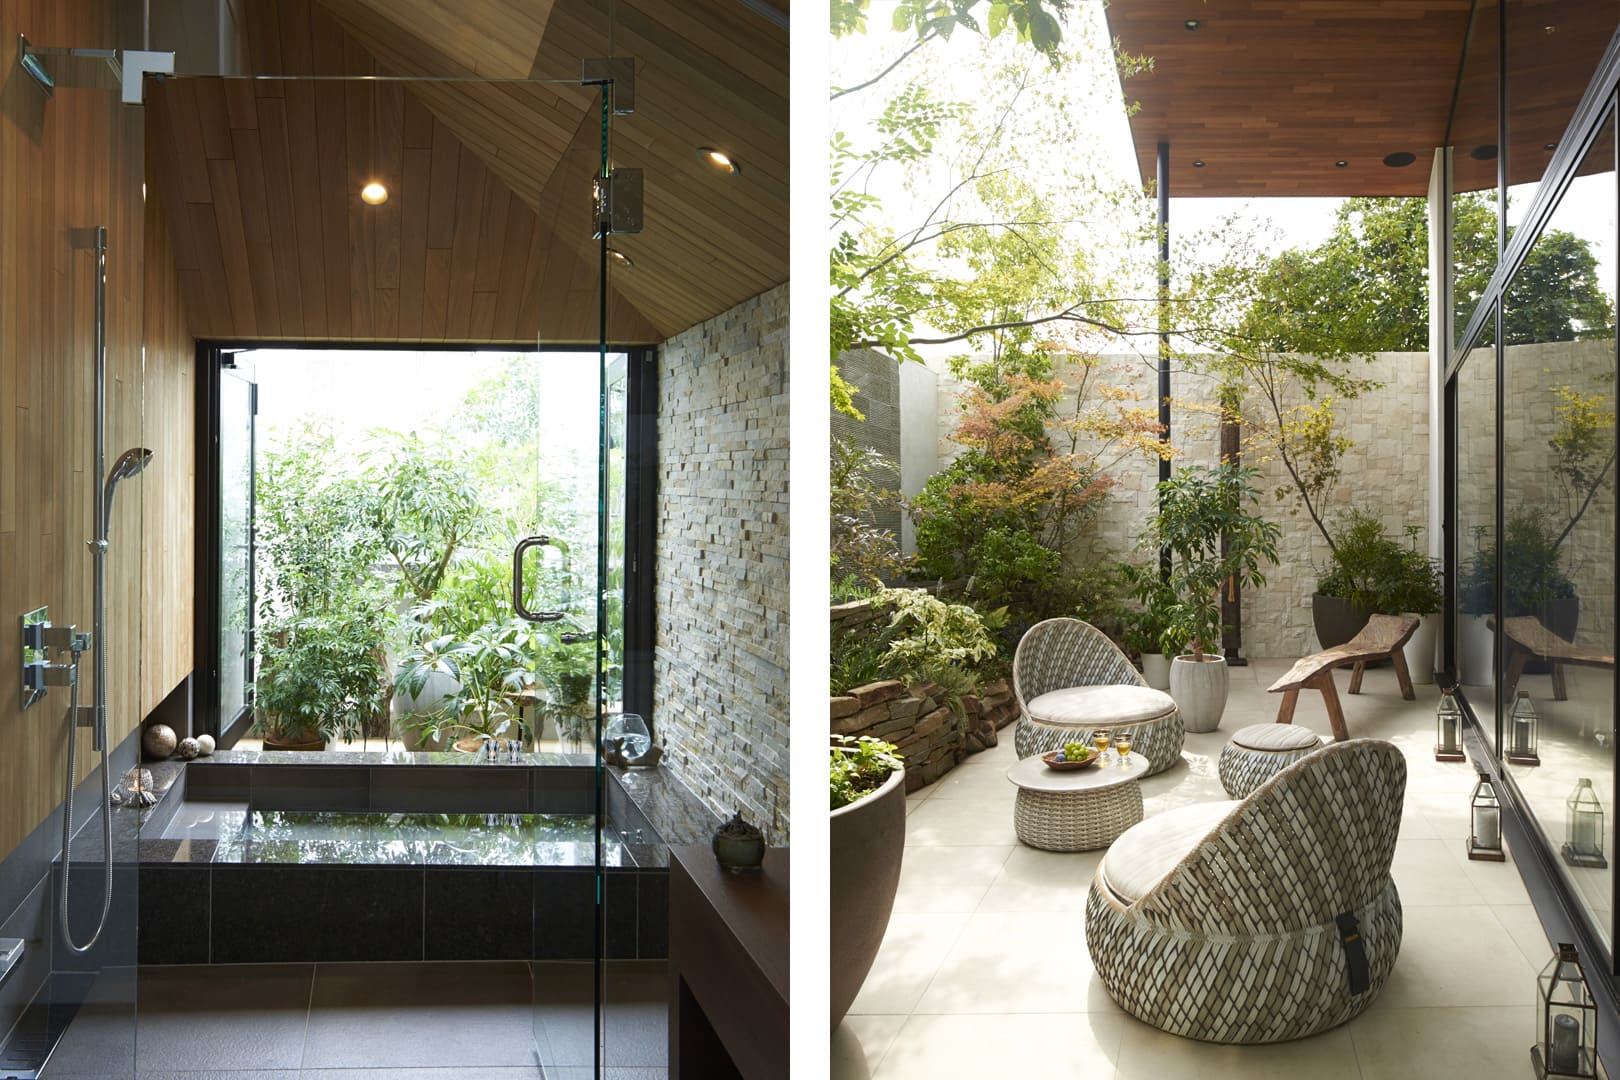 カジャデザイン 建築事例 0(ゼロ)LDKの家 バスルームと中庭